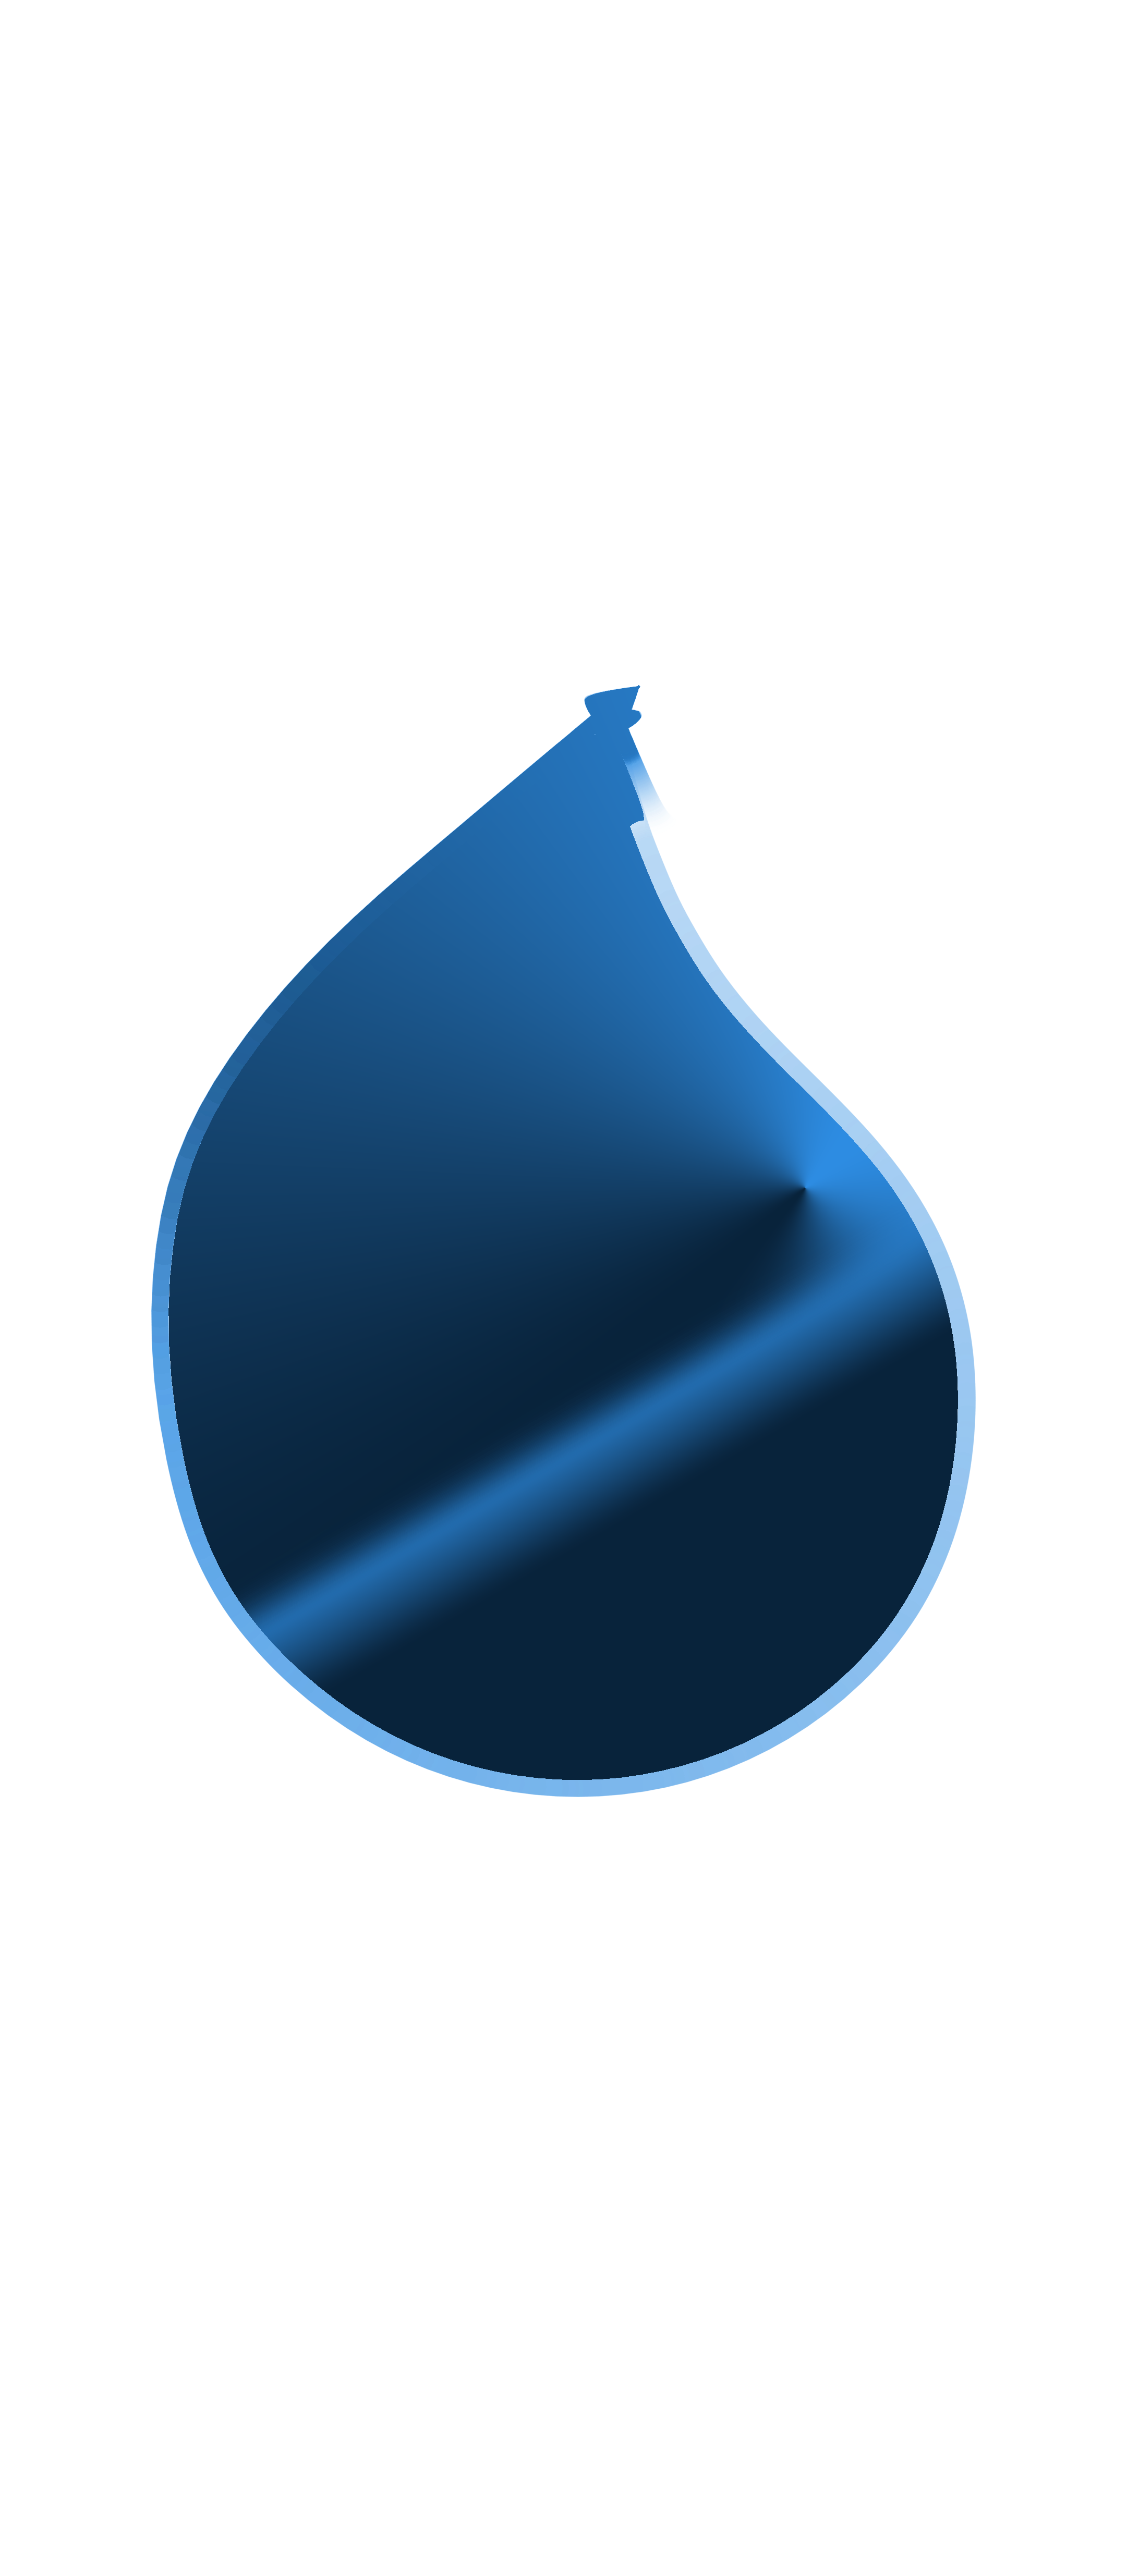 A liquid drop illustration